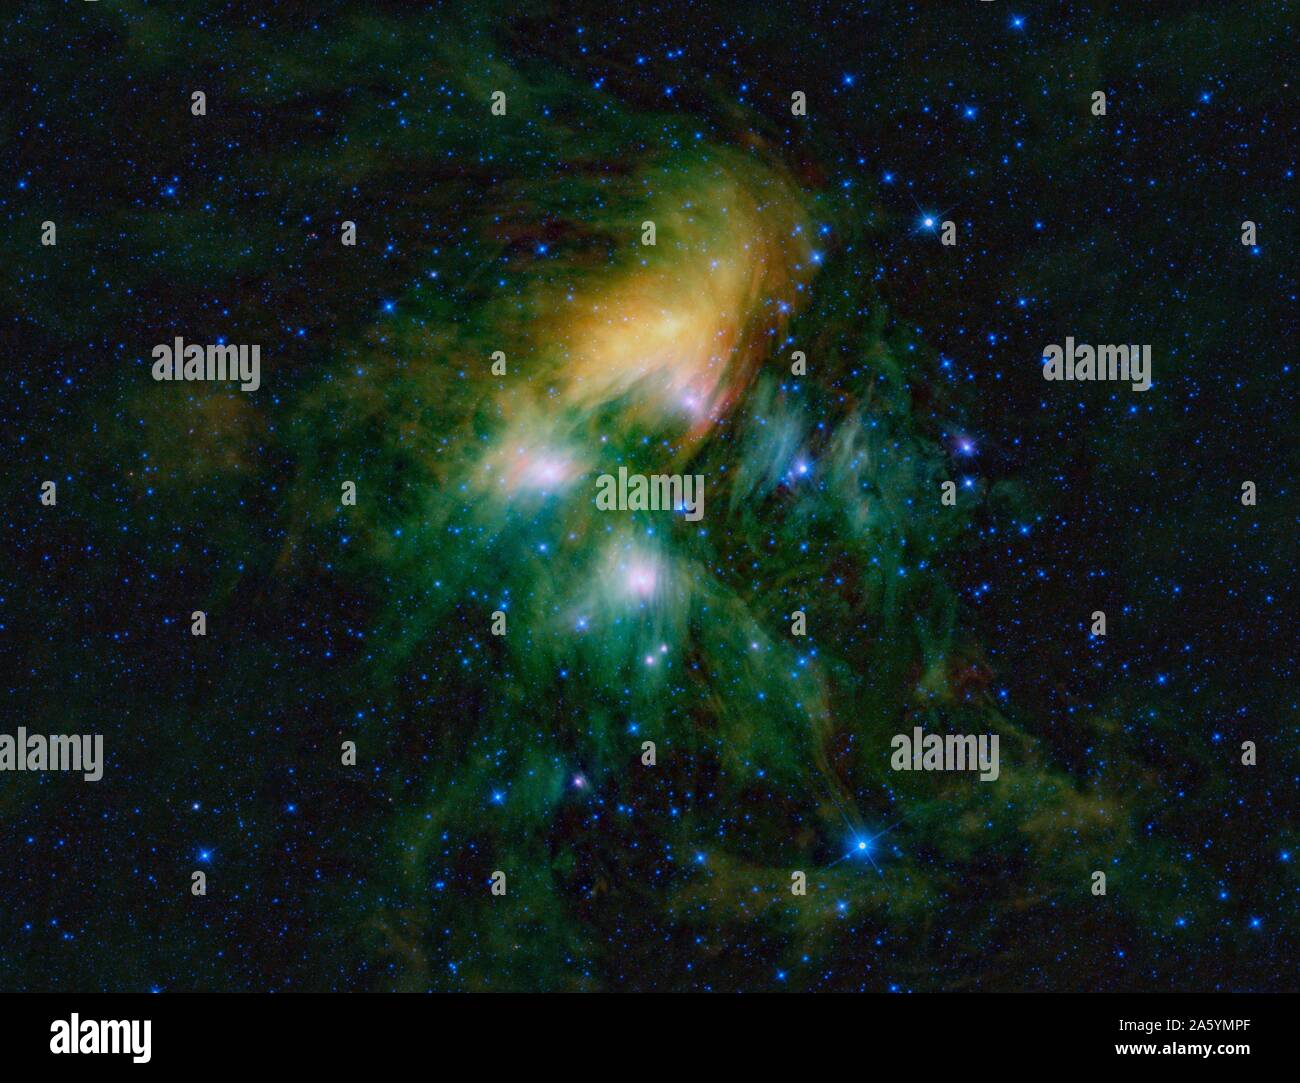 Esta imagen muestra el famoso cúmulo de estrellas de las Pléyades, vista a través de los ojos de los sabios. Foto de stock